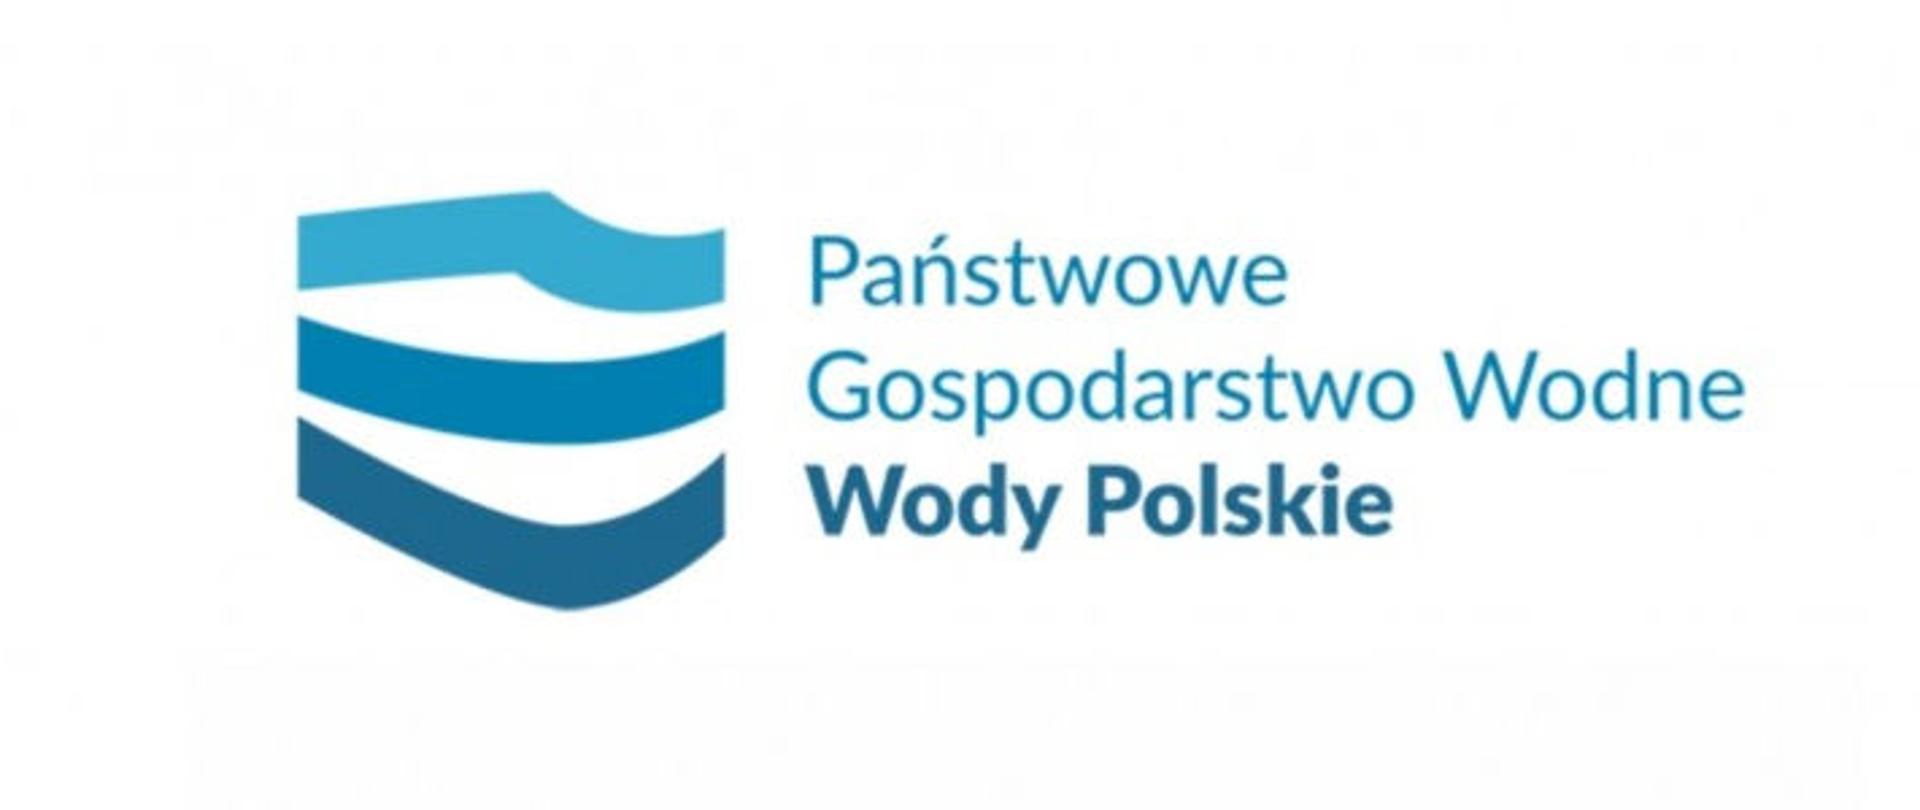 Logo obrazuje fale poprzez trzy nfalowane linie jedna pod druga oraz napis Państwowe Gospodarsto wodne Wody polskie